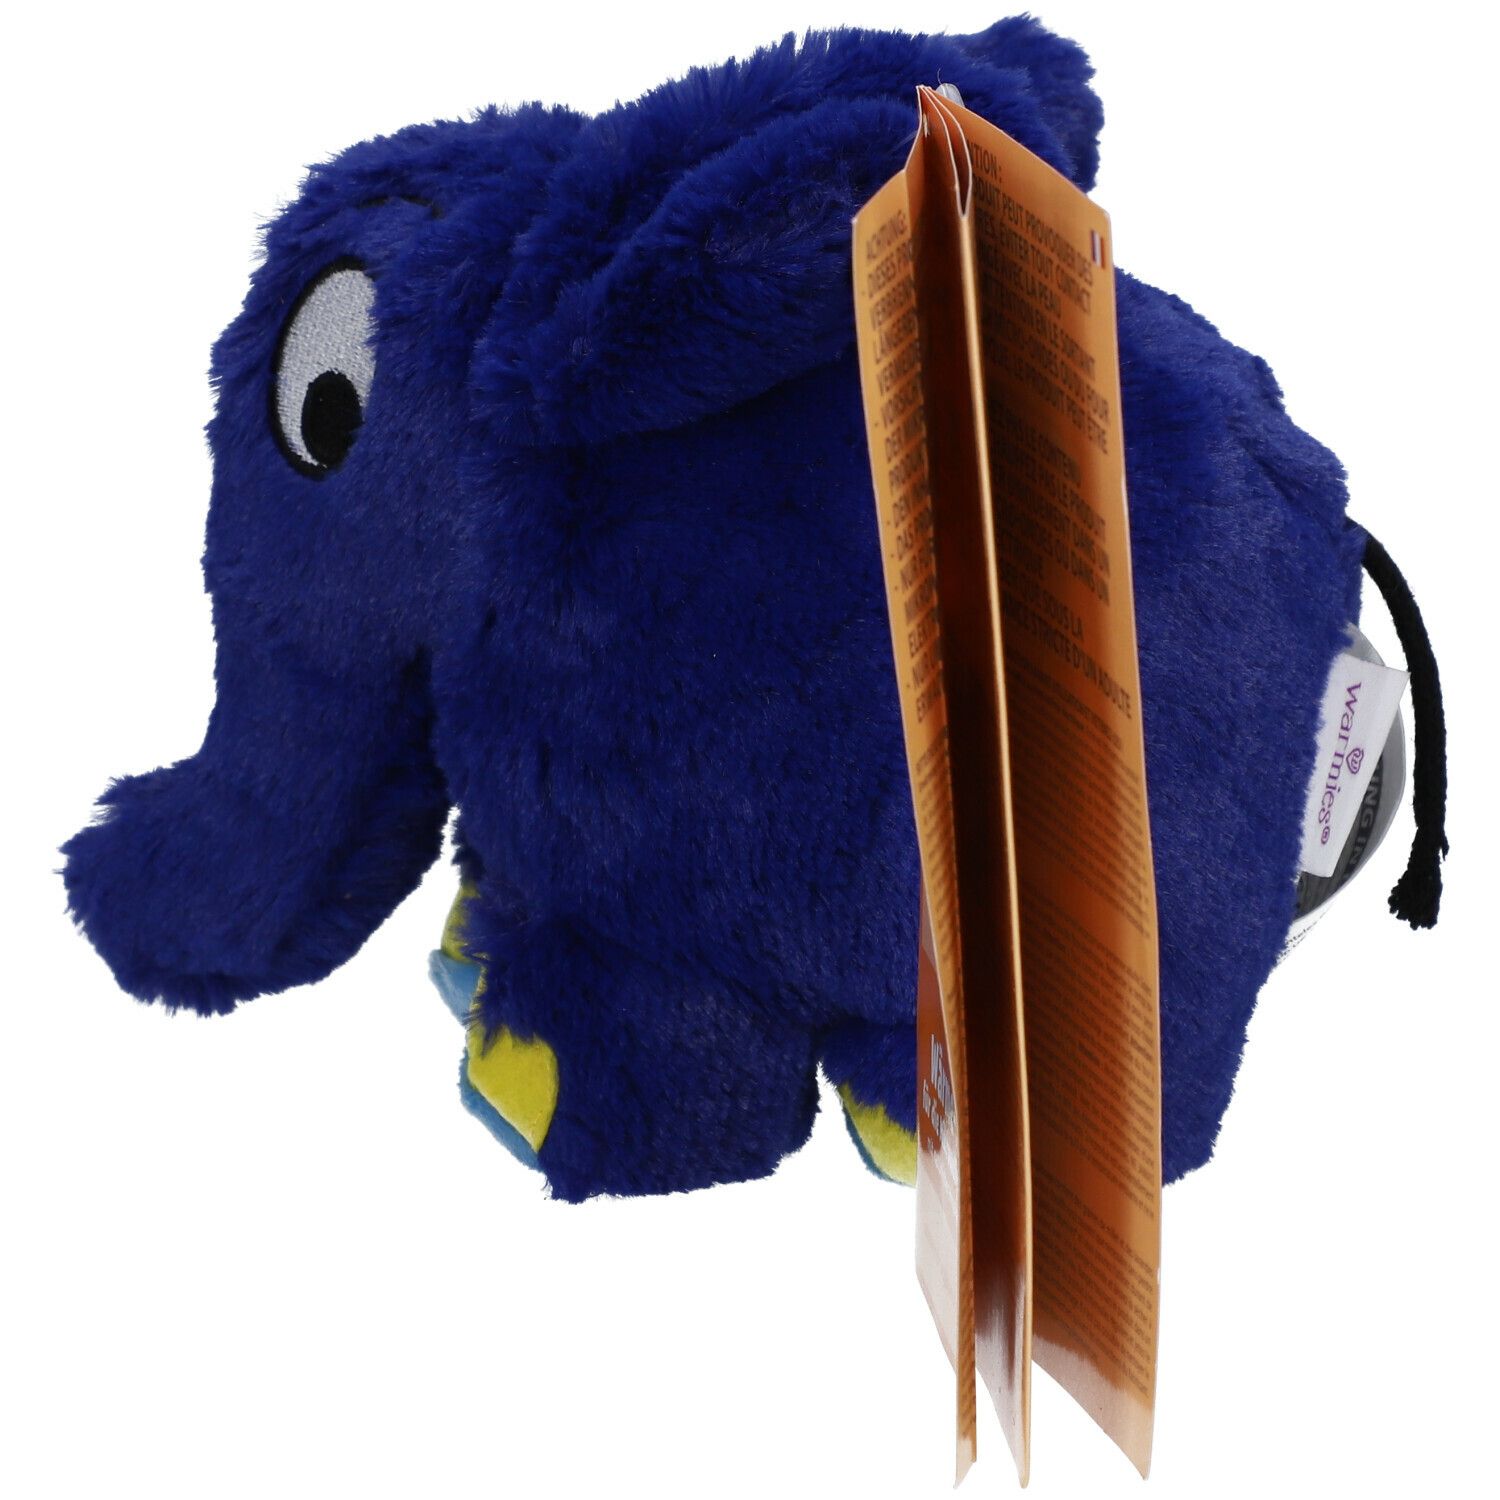 APOTHEKE Elefant blaue St SHOP - Der Warmies® 1